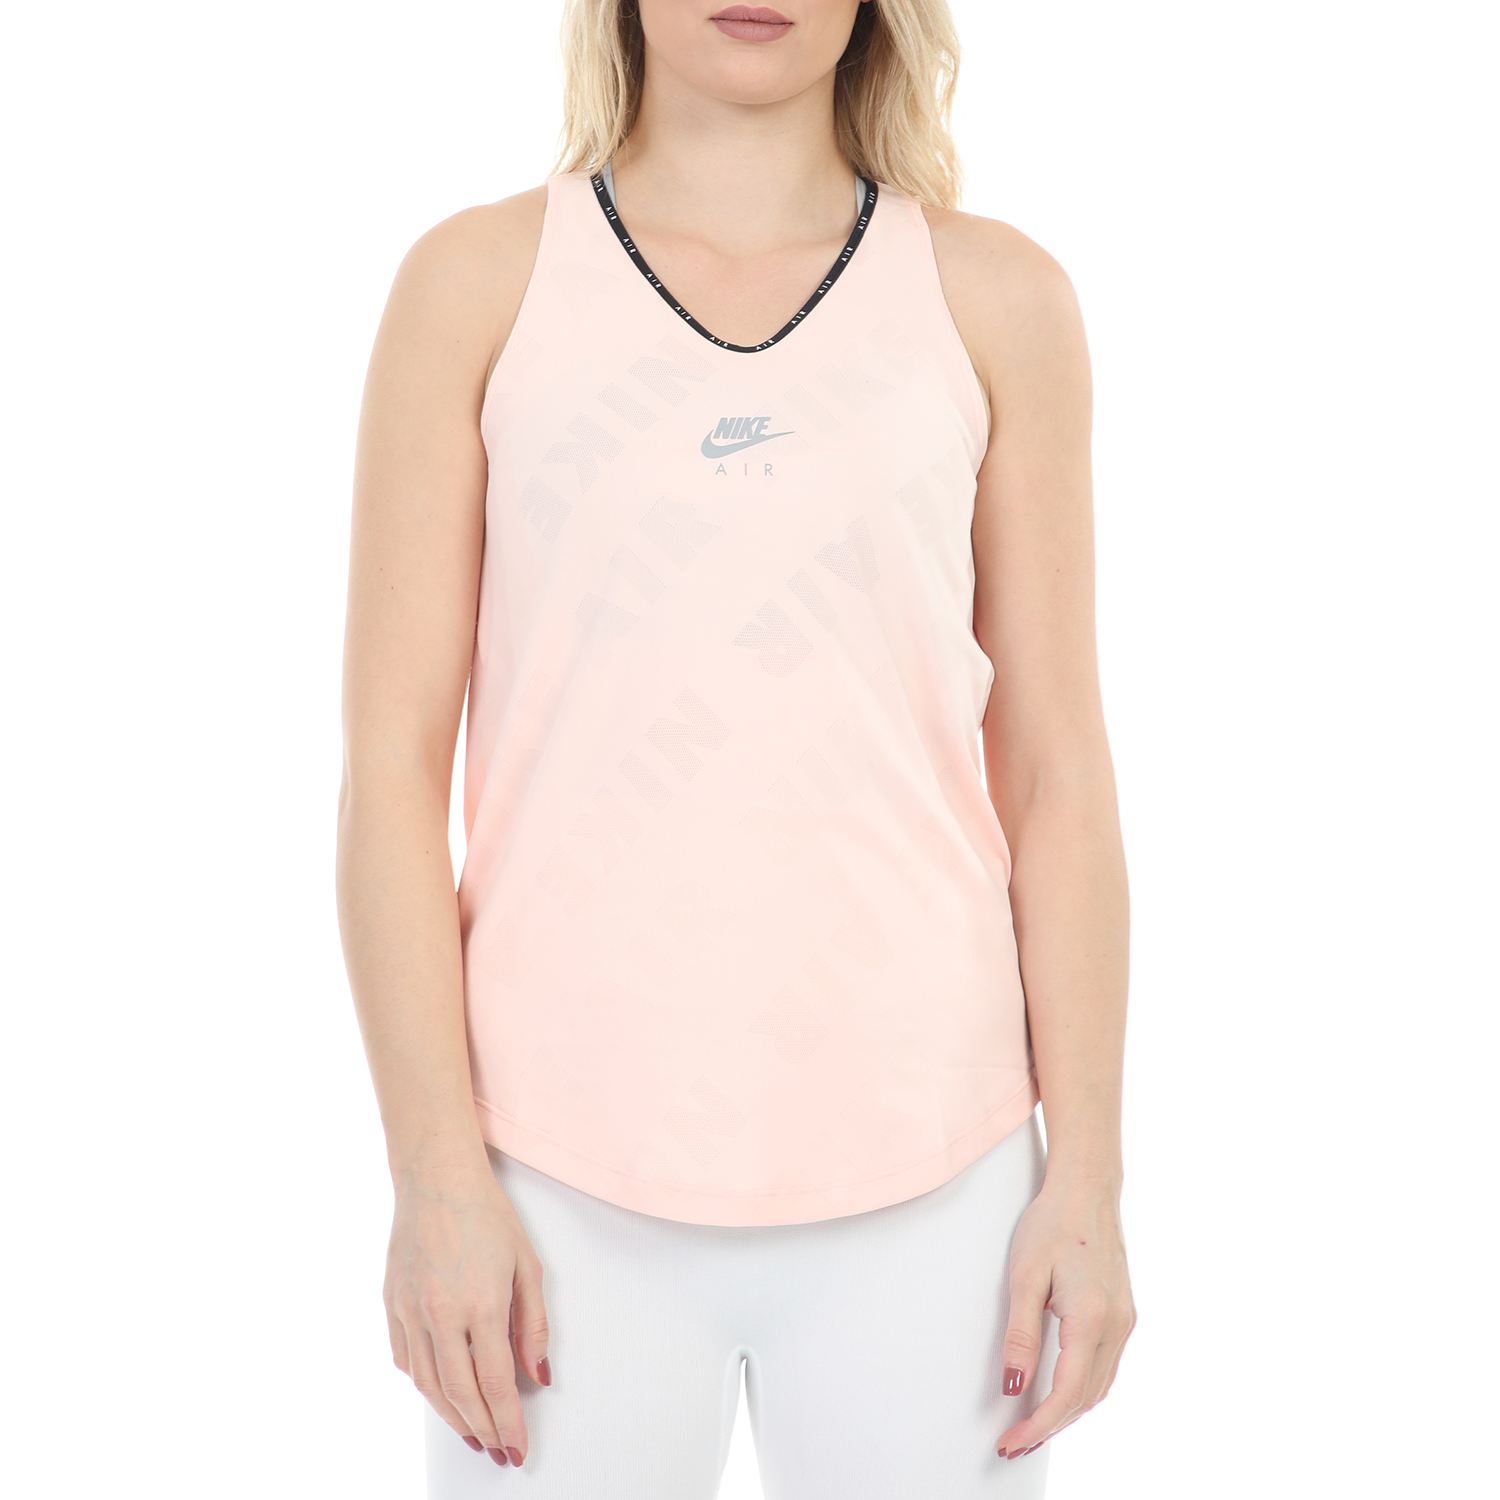 Γυναικεία/Ρούχα/Αθλητικά/T-shirt-Τοπ NIKE - Γυναικείο αθλητικό τοπ NIKE AIR TANK ροζ